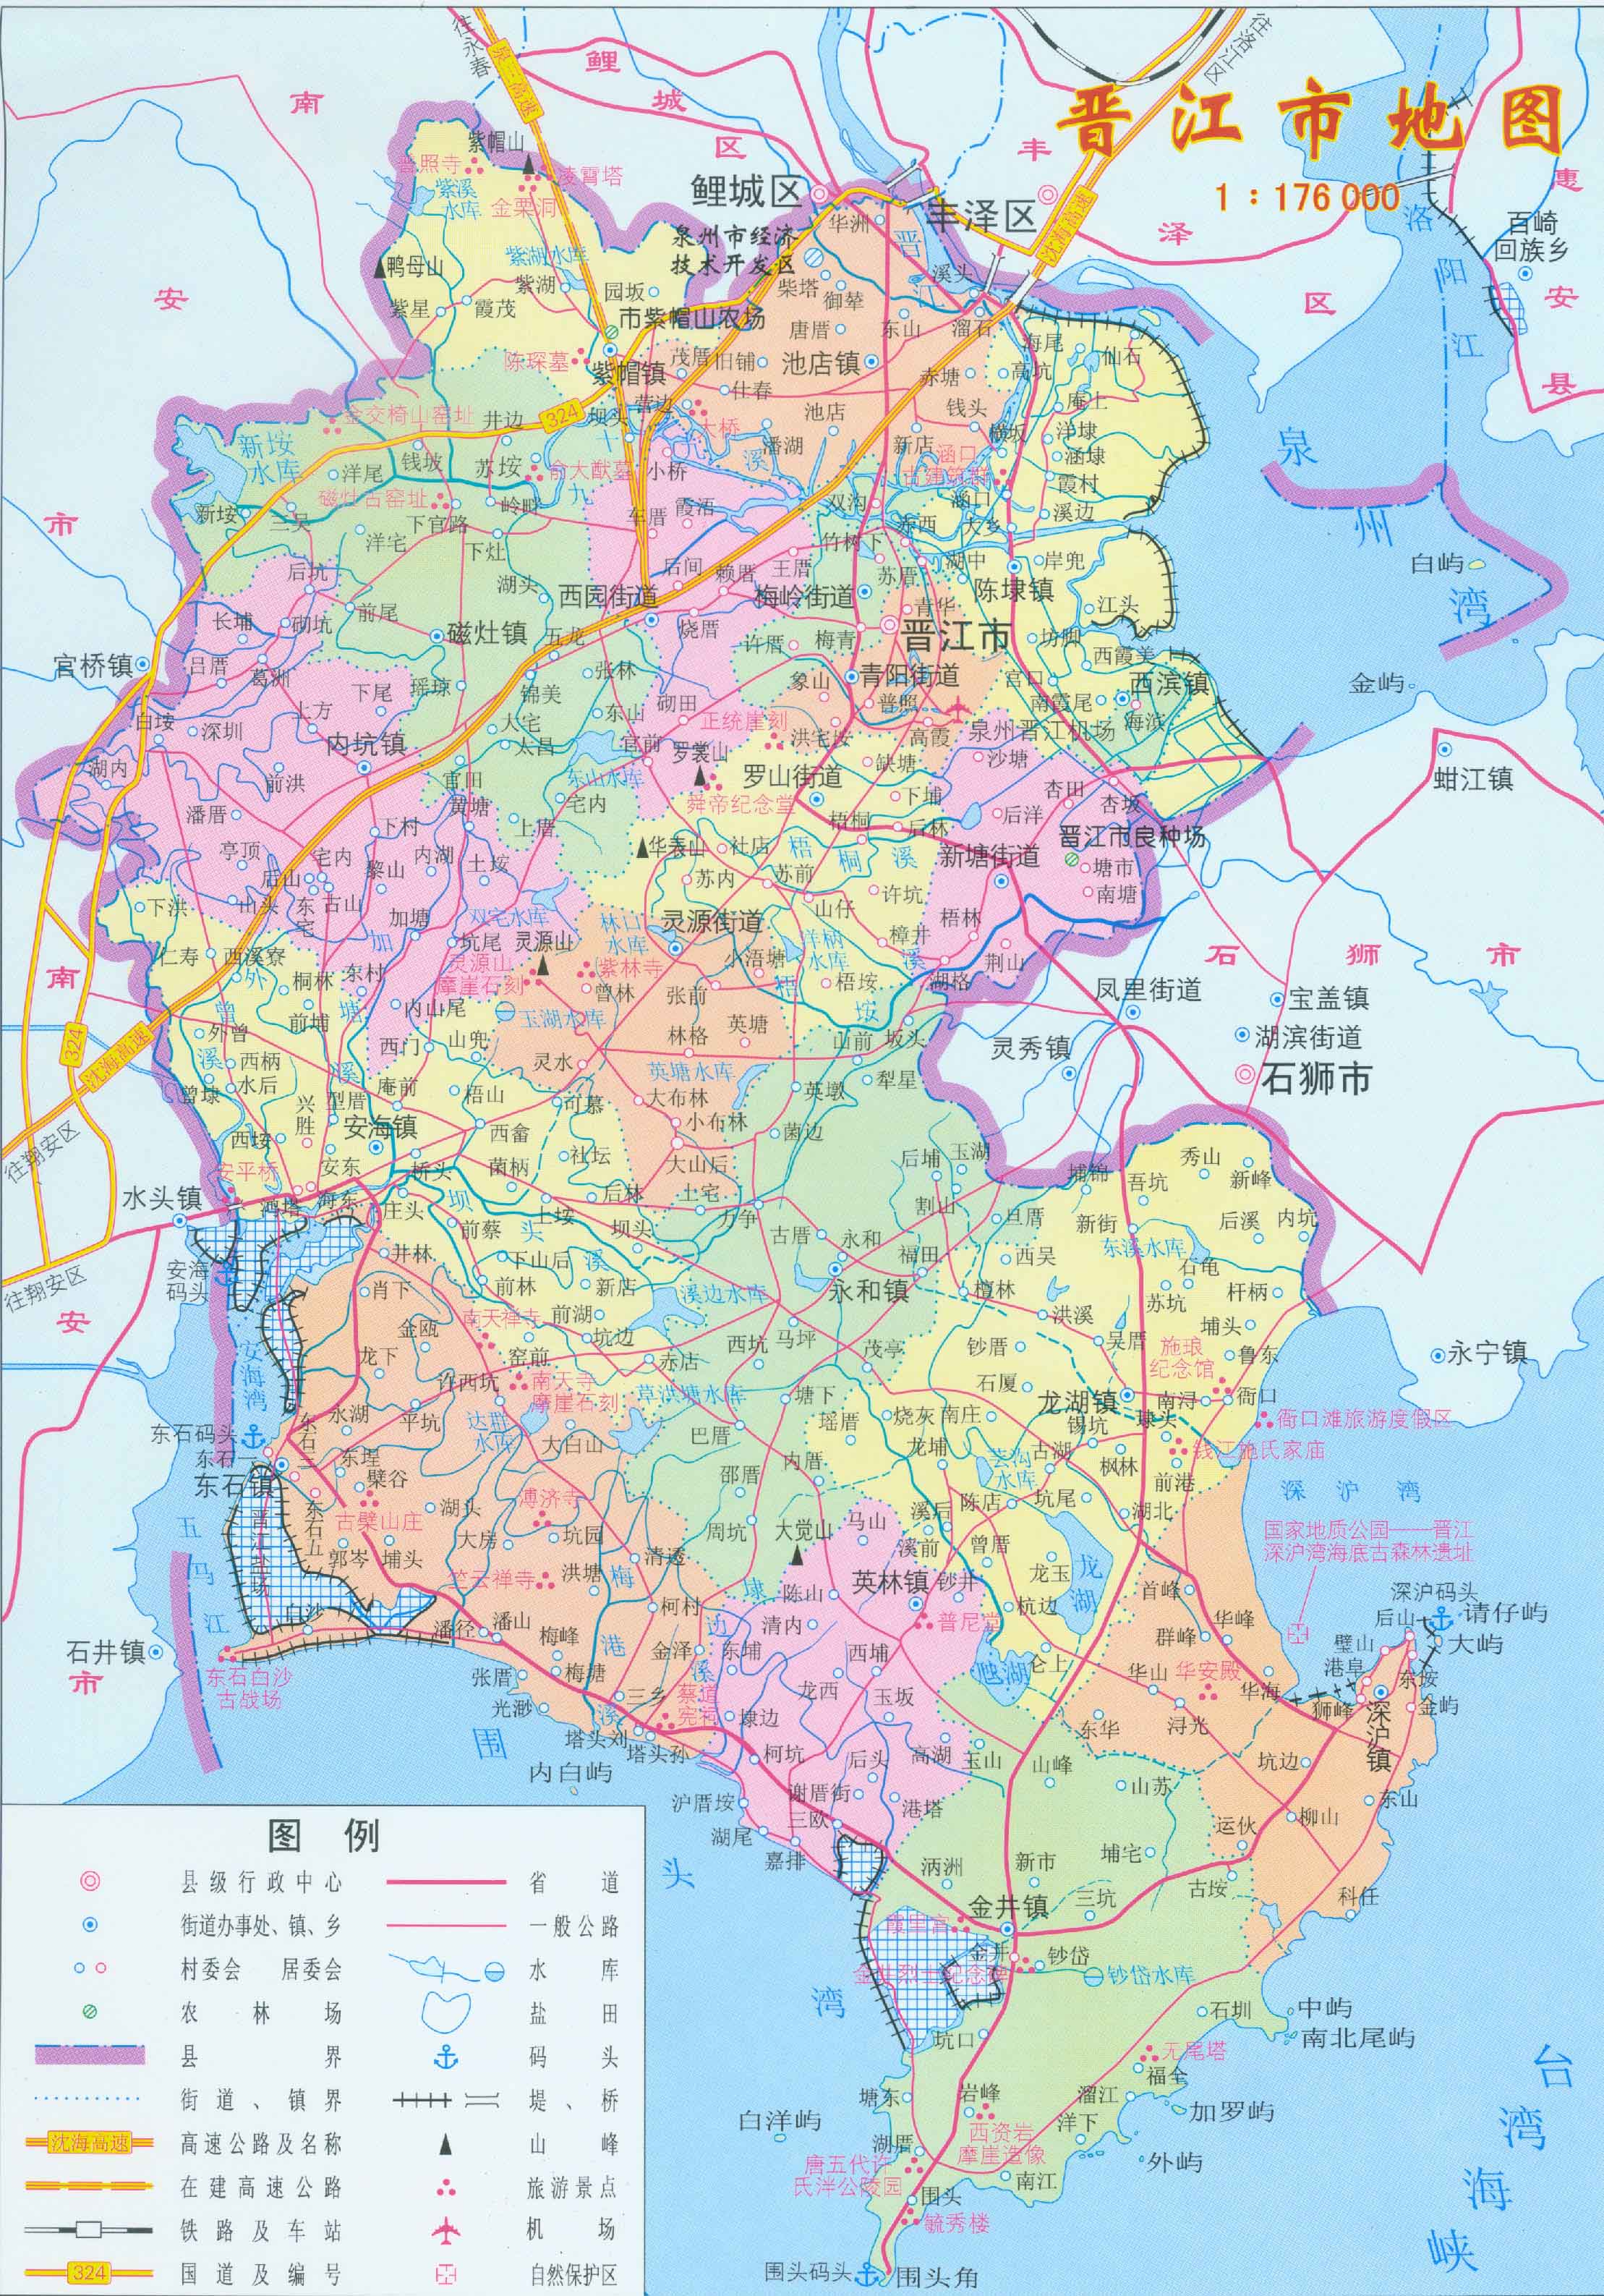 晋江市地图|晋江市地图全图高清版大图片|旅途风景图片网|www.visacits.com